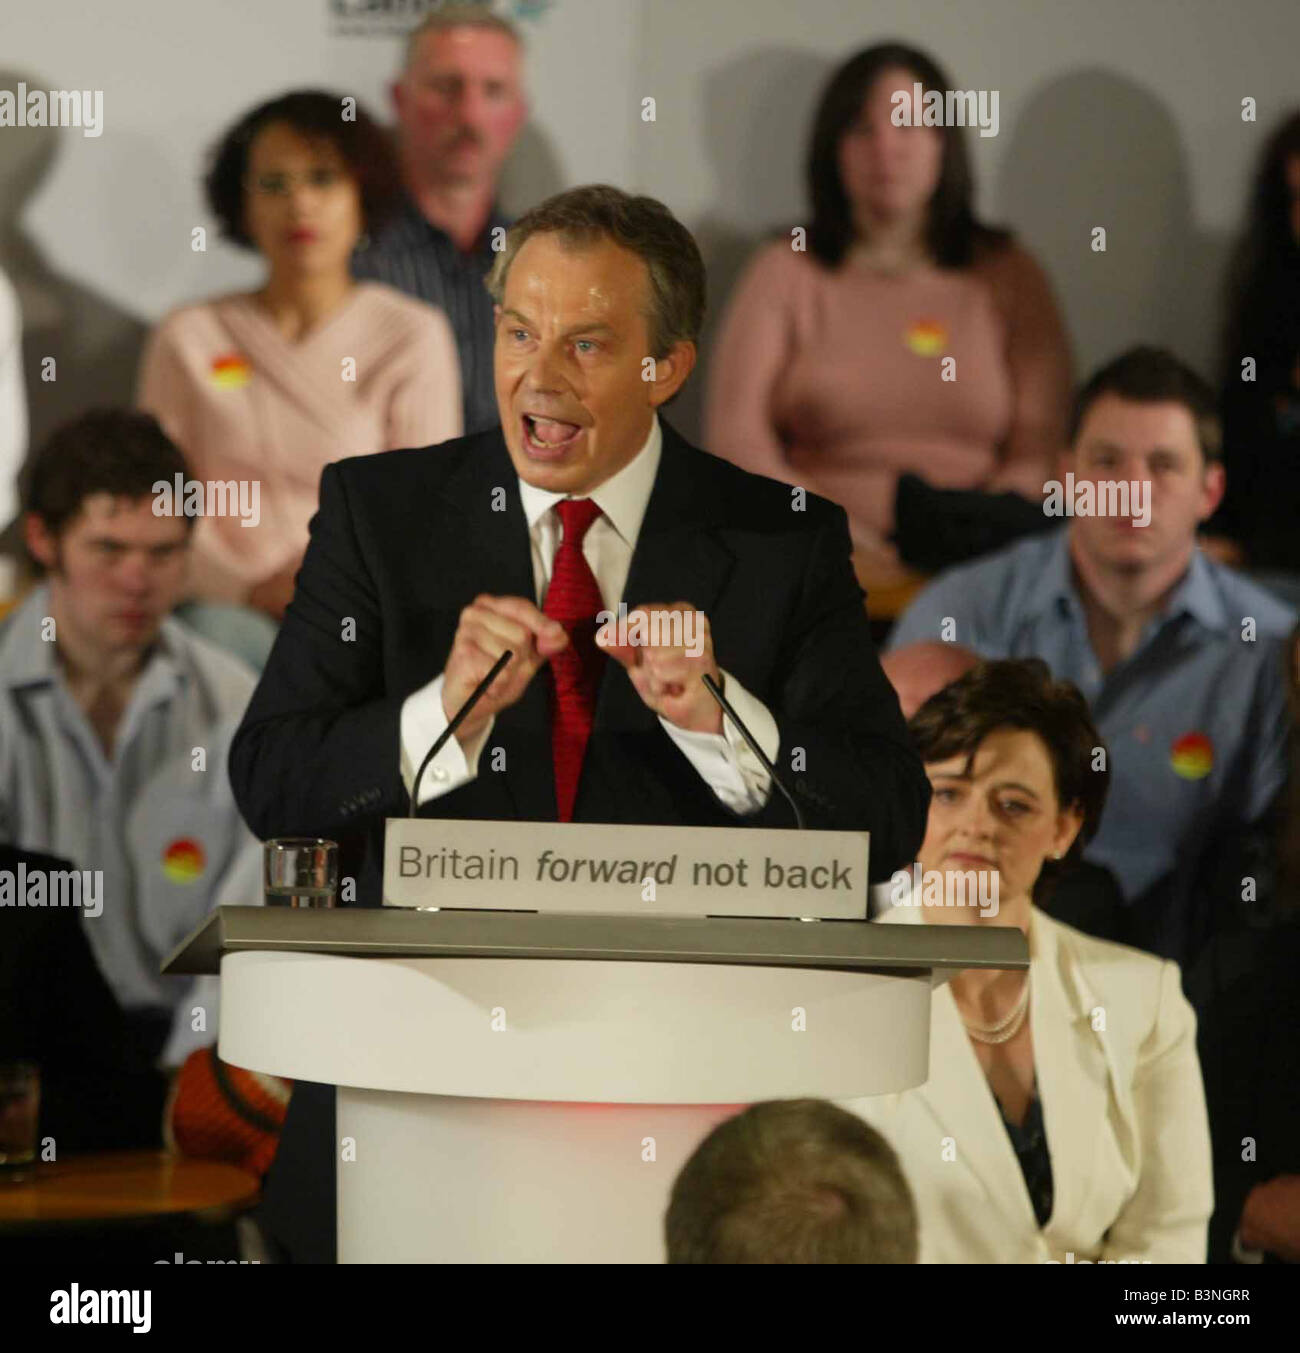 Tony Blair, Primer Ministro asistir a una reunión de adopción del Partido Laborista Sedgfield elegir a él como el candidato por el partido laborista en las elecciones celebradas en mayo de su esposa Cherie Blair relojes como se dirige a su audiencia de abril de 2005 Foto de stock